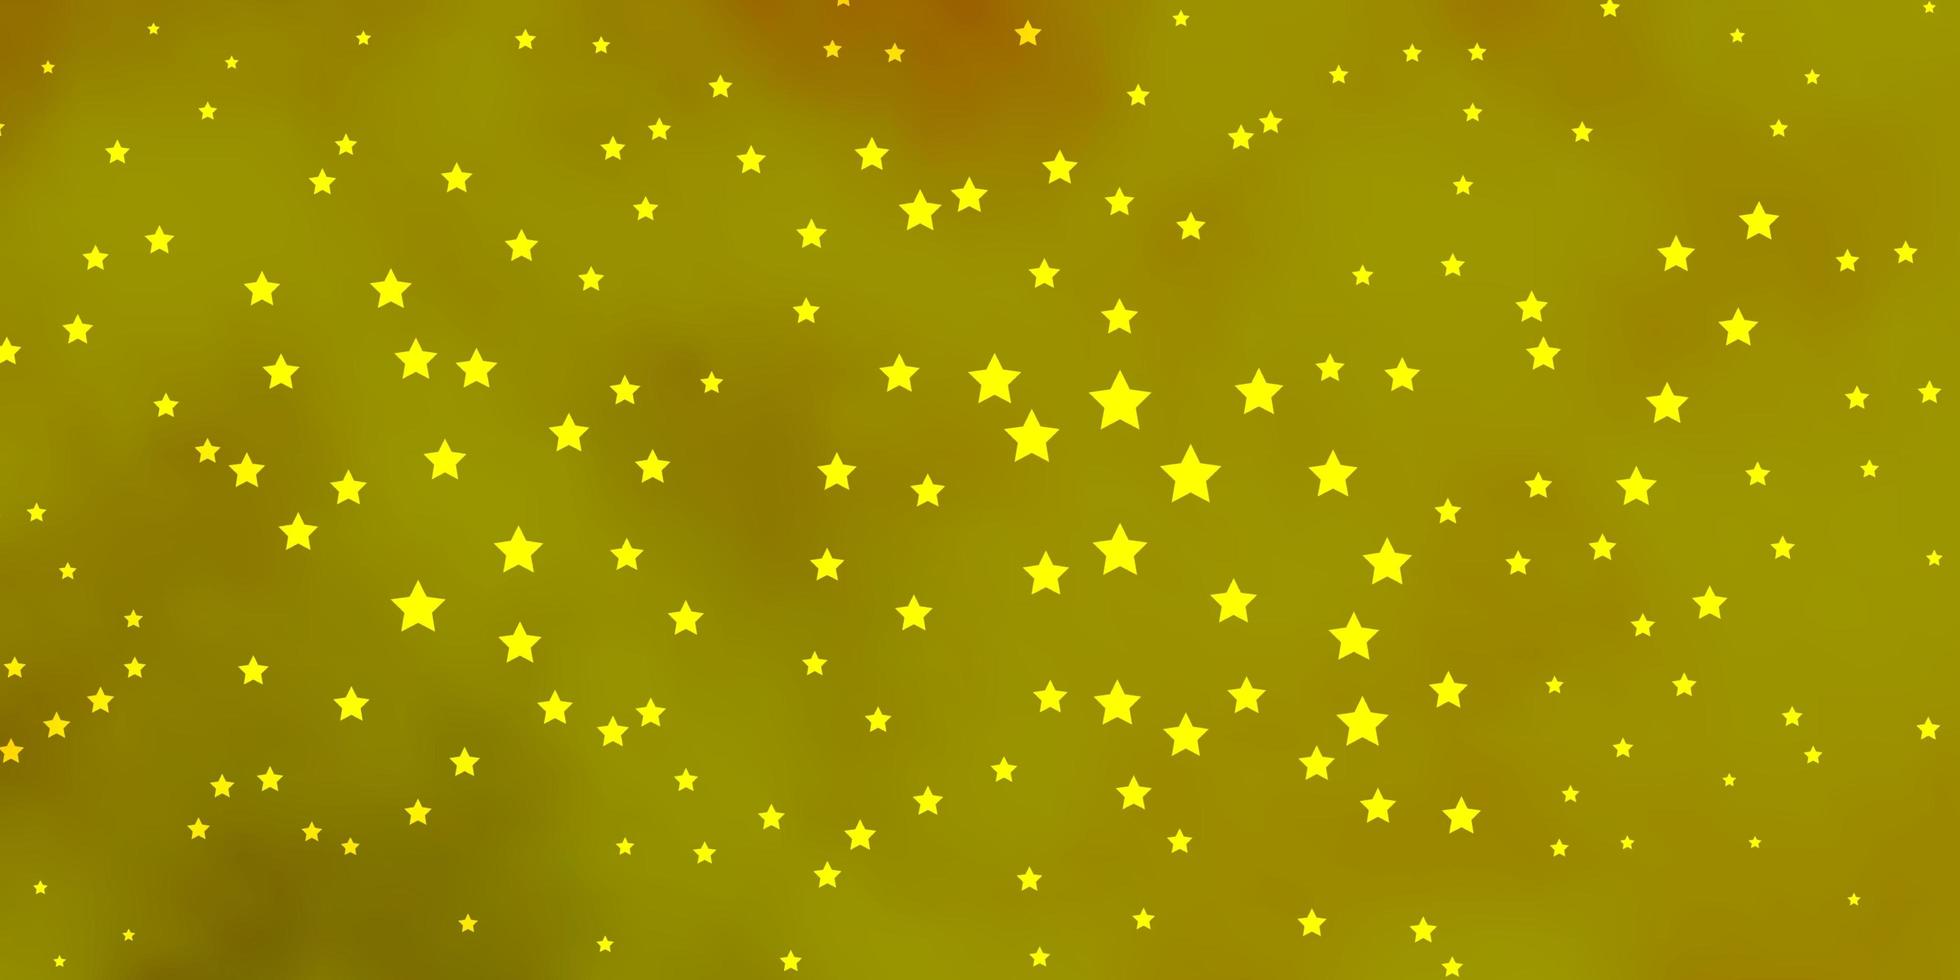 modèle vectoriel vert foncé et jaune avec des étoiles au néon. illustration colorée avec des étoiles dégradées abstraites. modèle pour emballer des cadeaux.